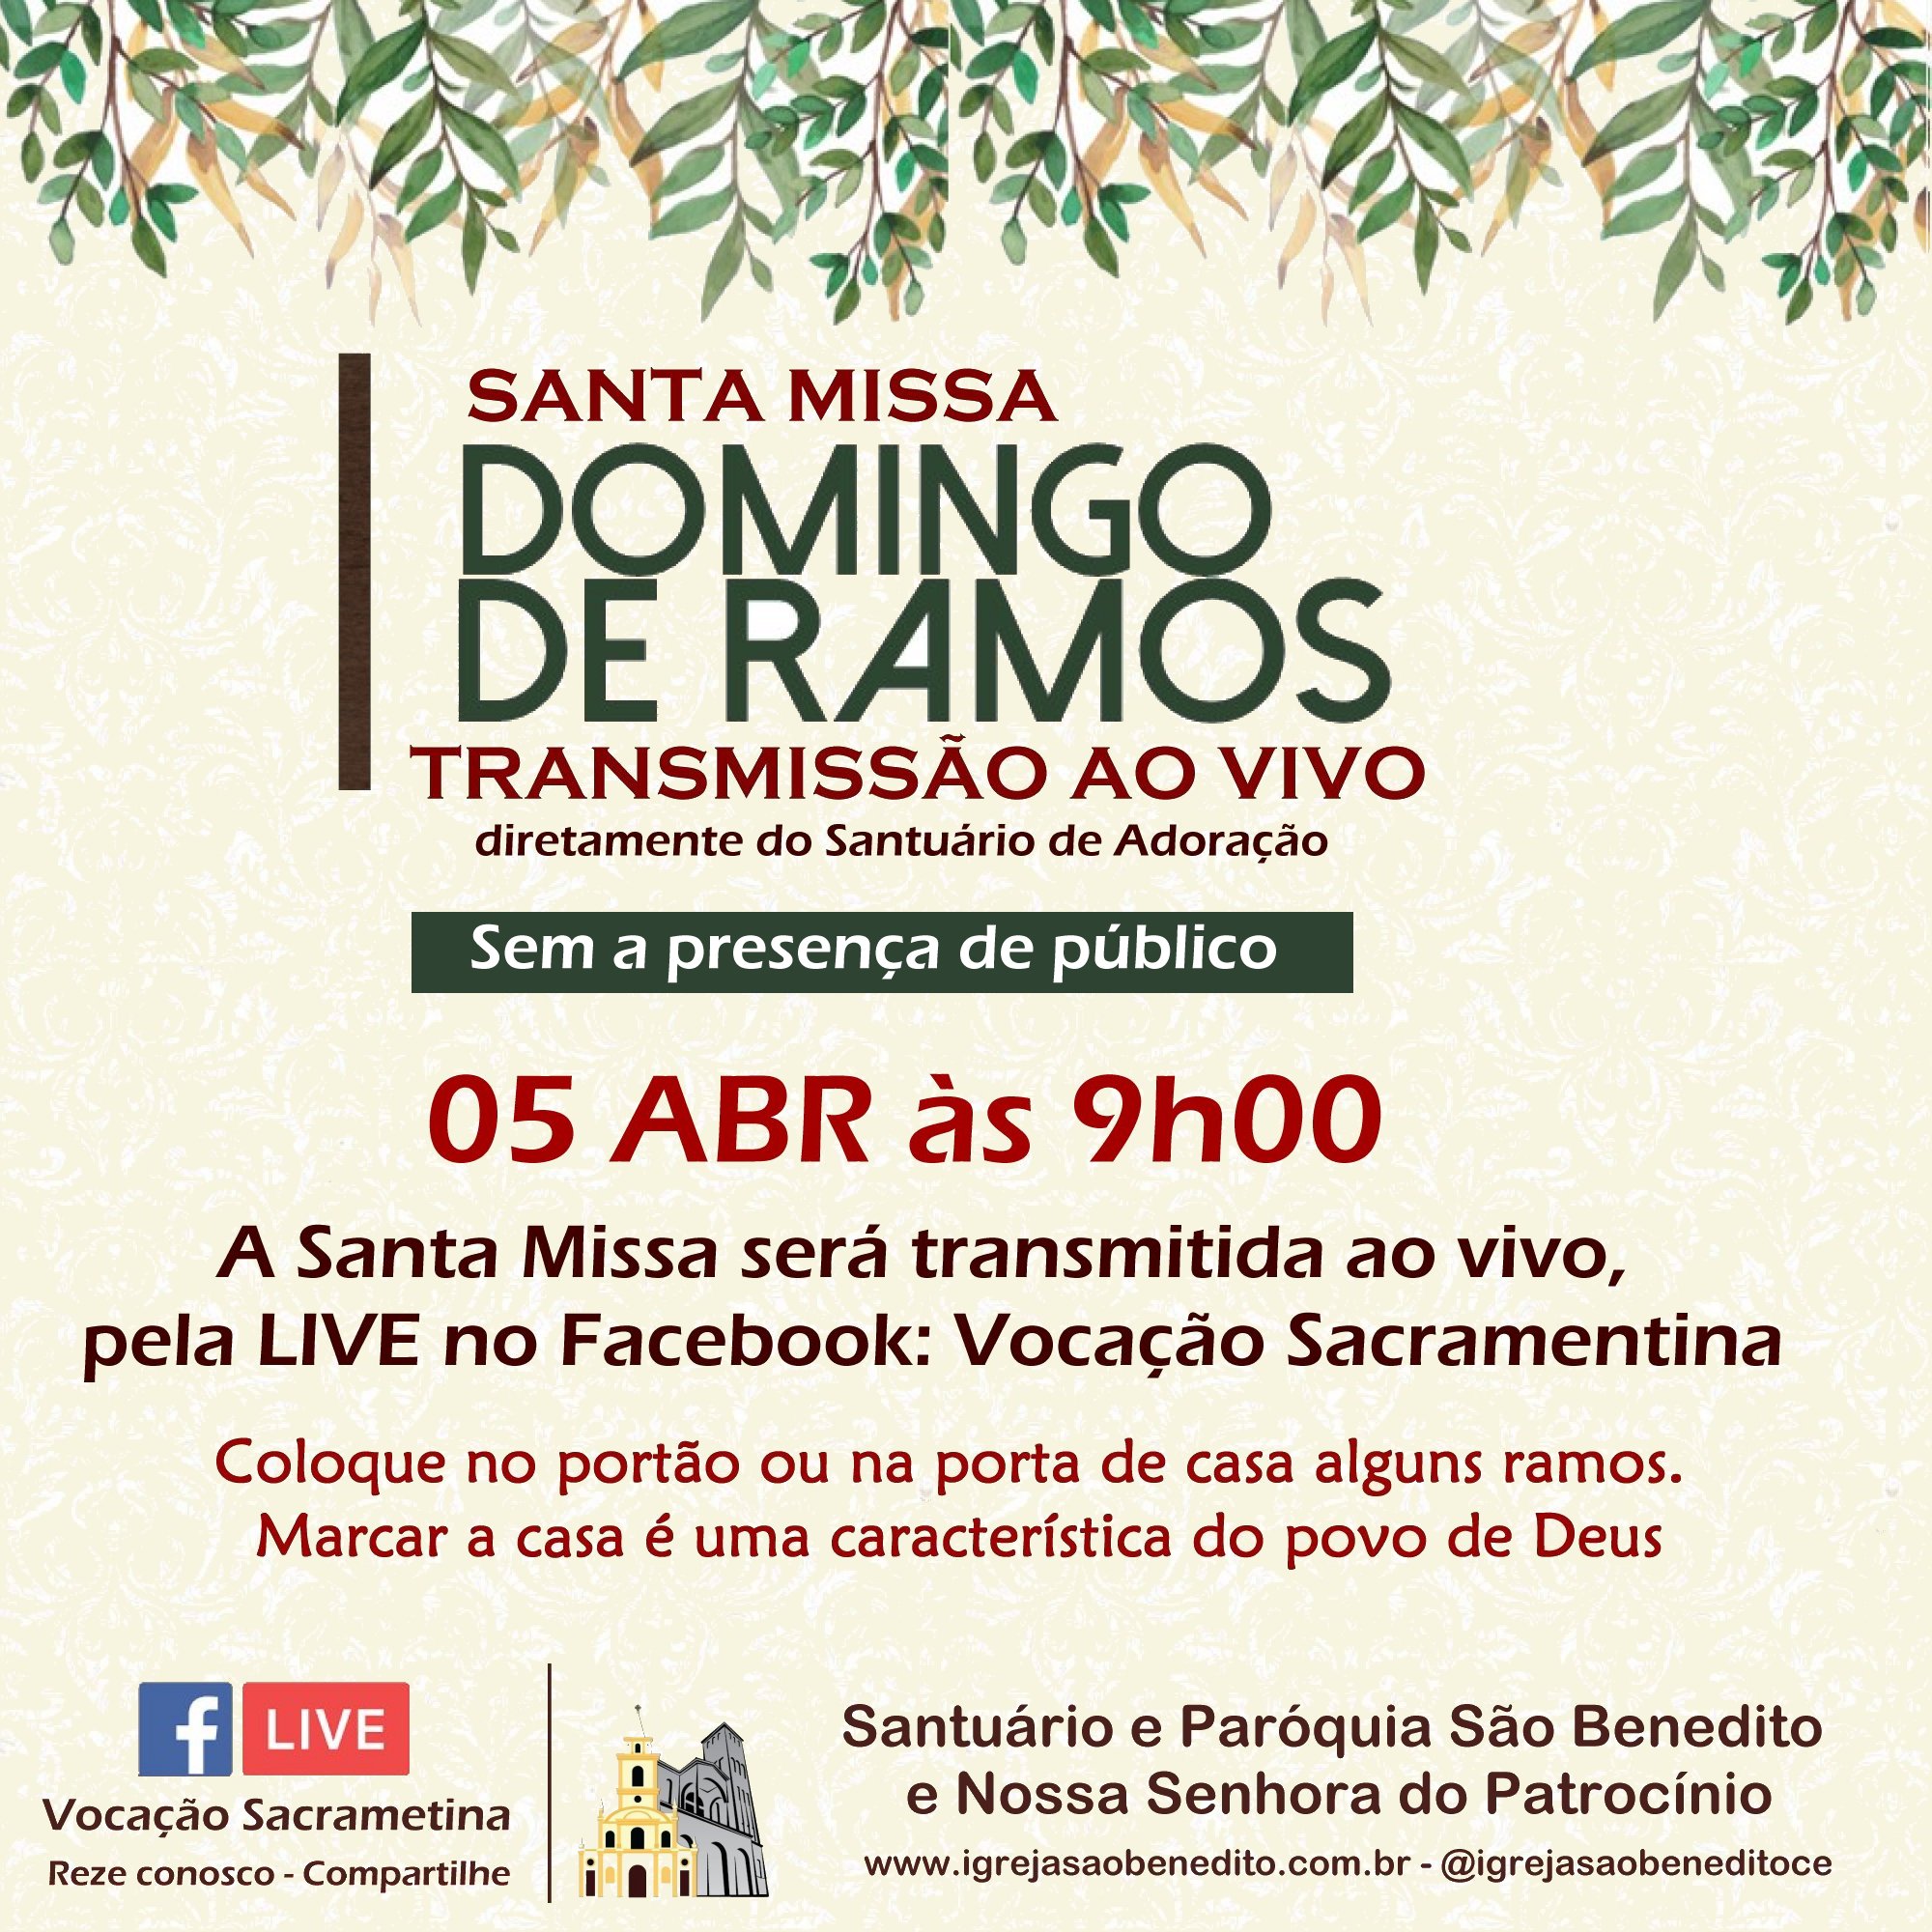 Celebração do Domingo de Ramos com transmissão ao vivo, sem a presença de público, dia 05/04. Participe!